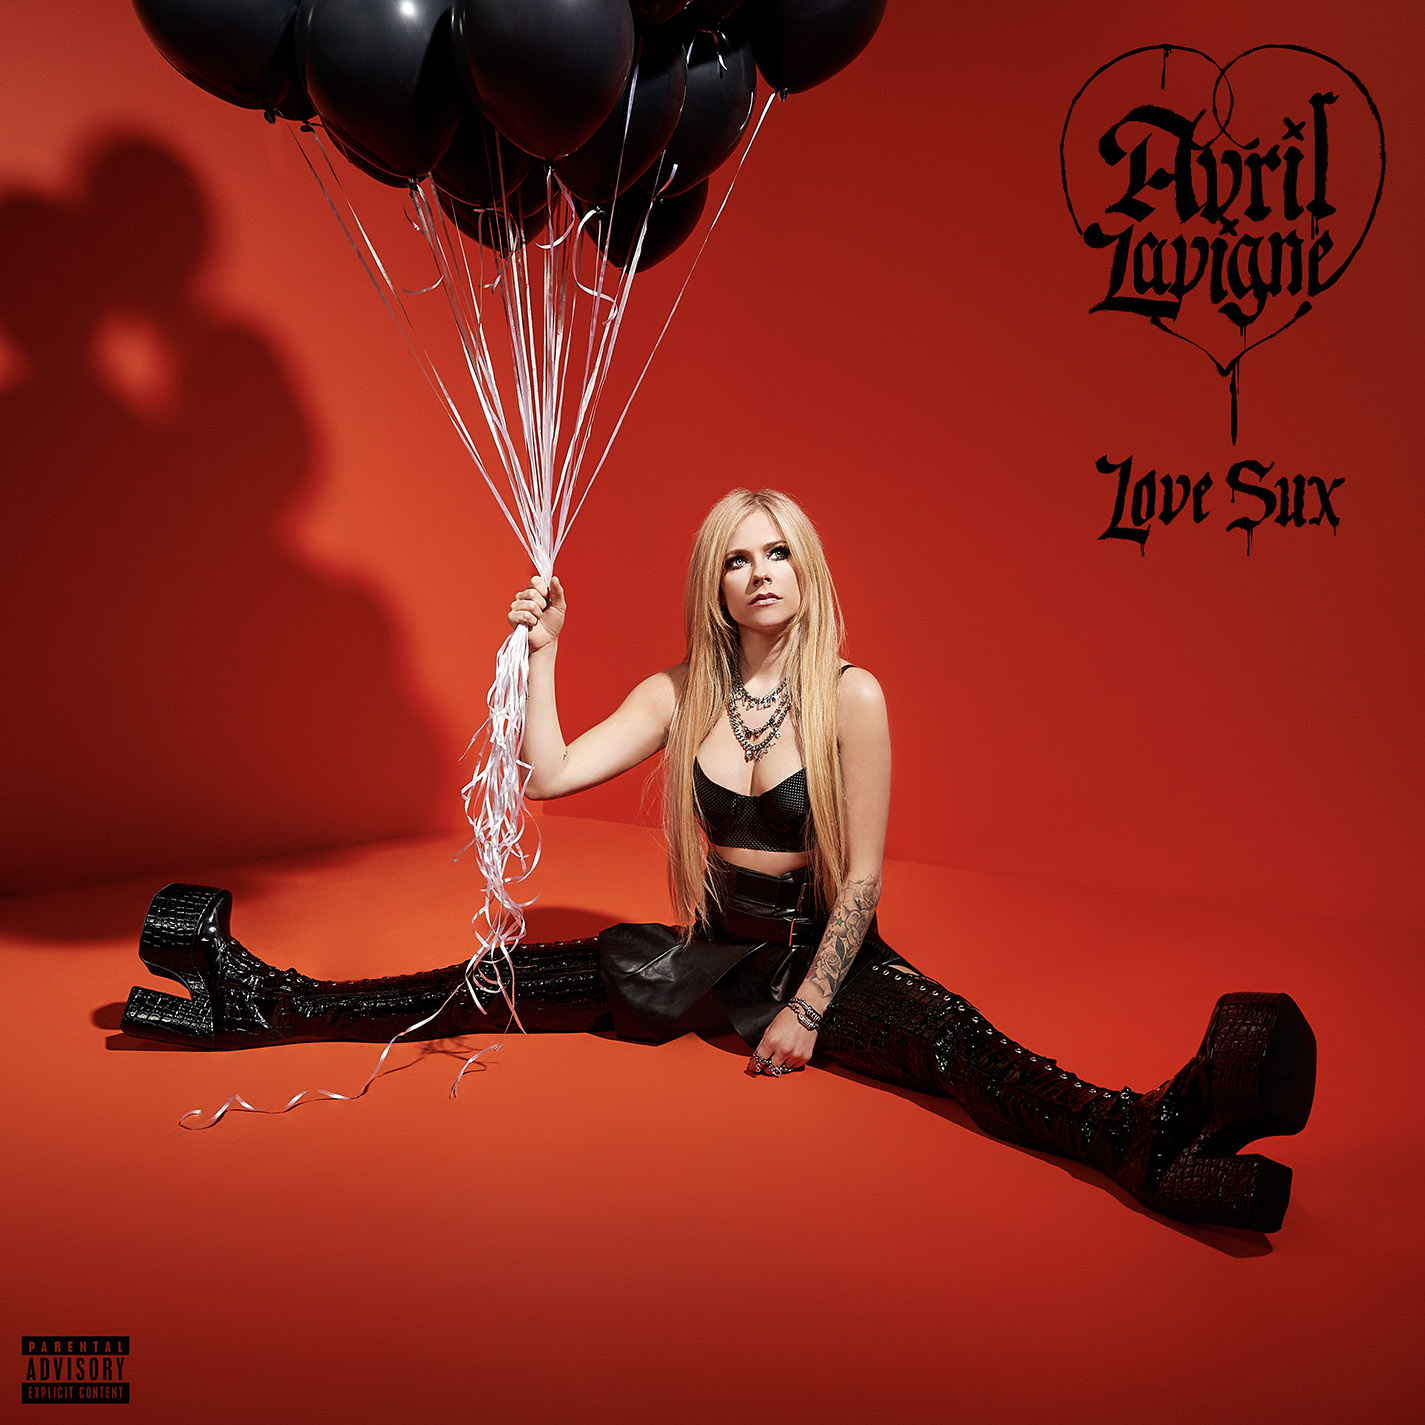 Saiu prévia de nova musica, capa e pré-venda de novo álbum de Avril Lavigne Love  Sux, que será lançado dia 25 de fevereiro - Notícias - BCharts Fórum